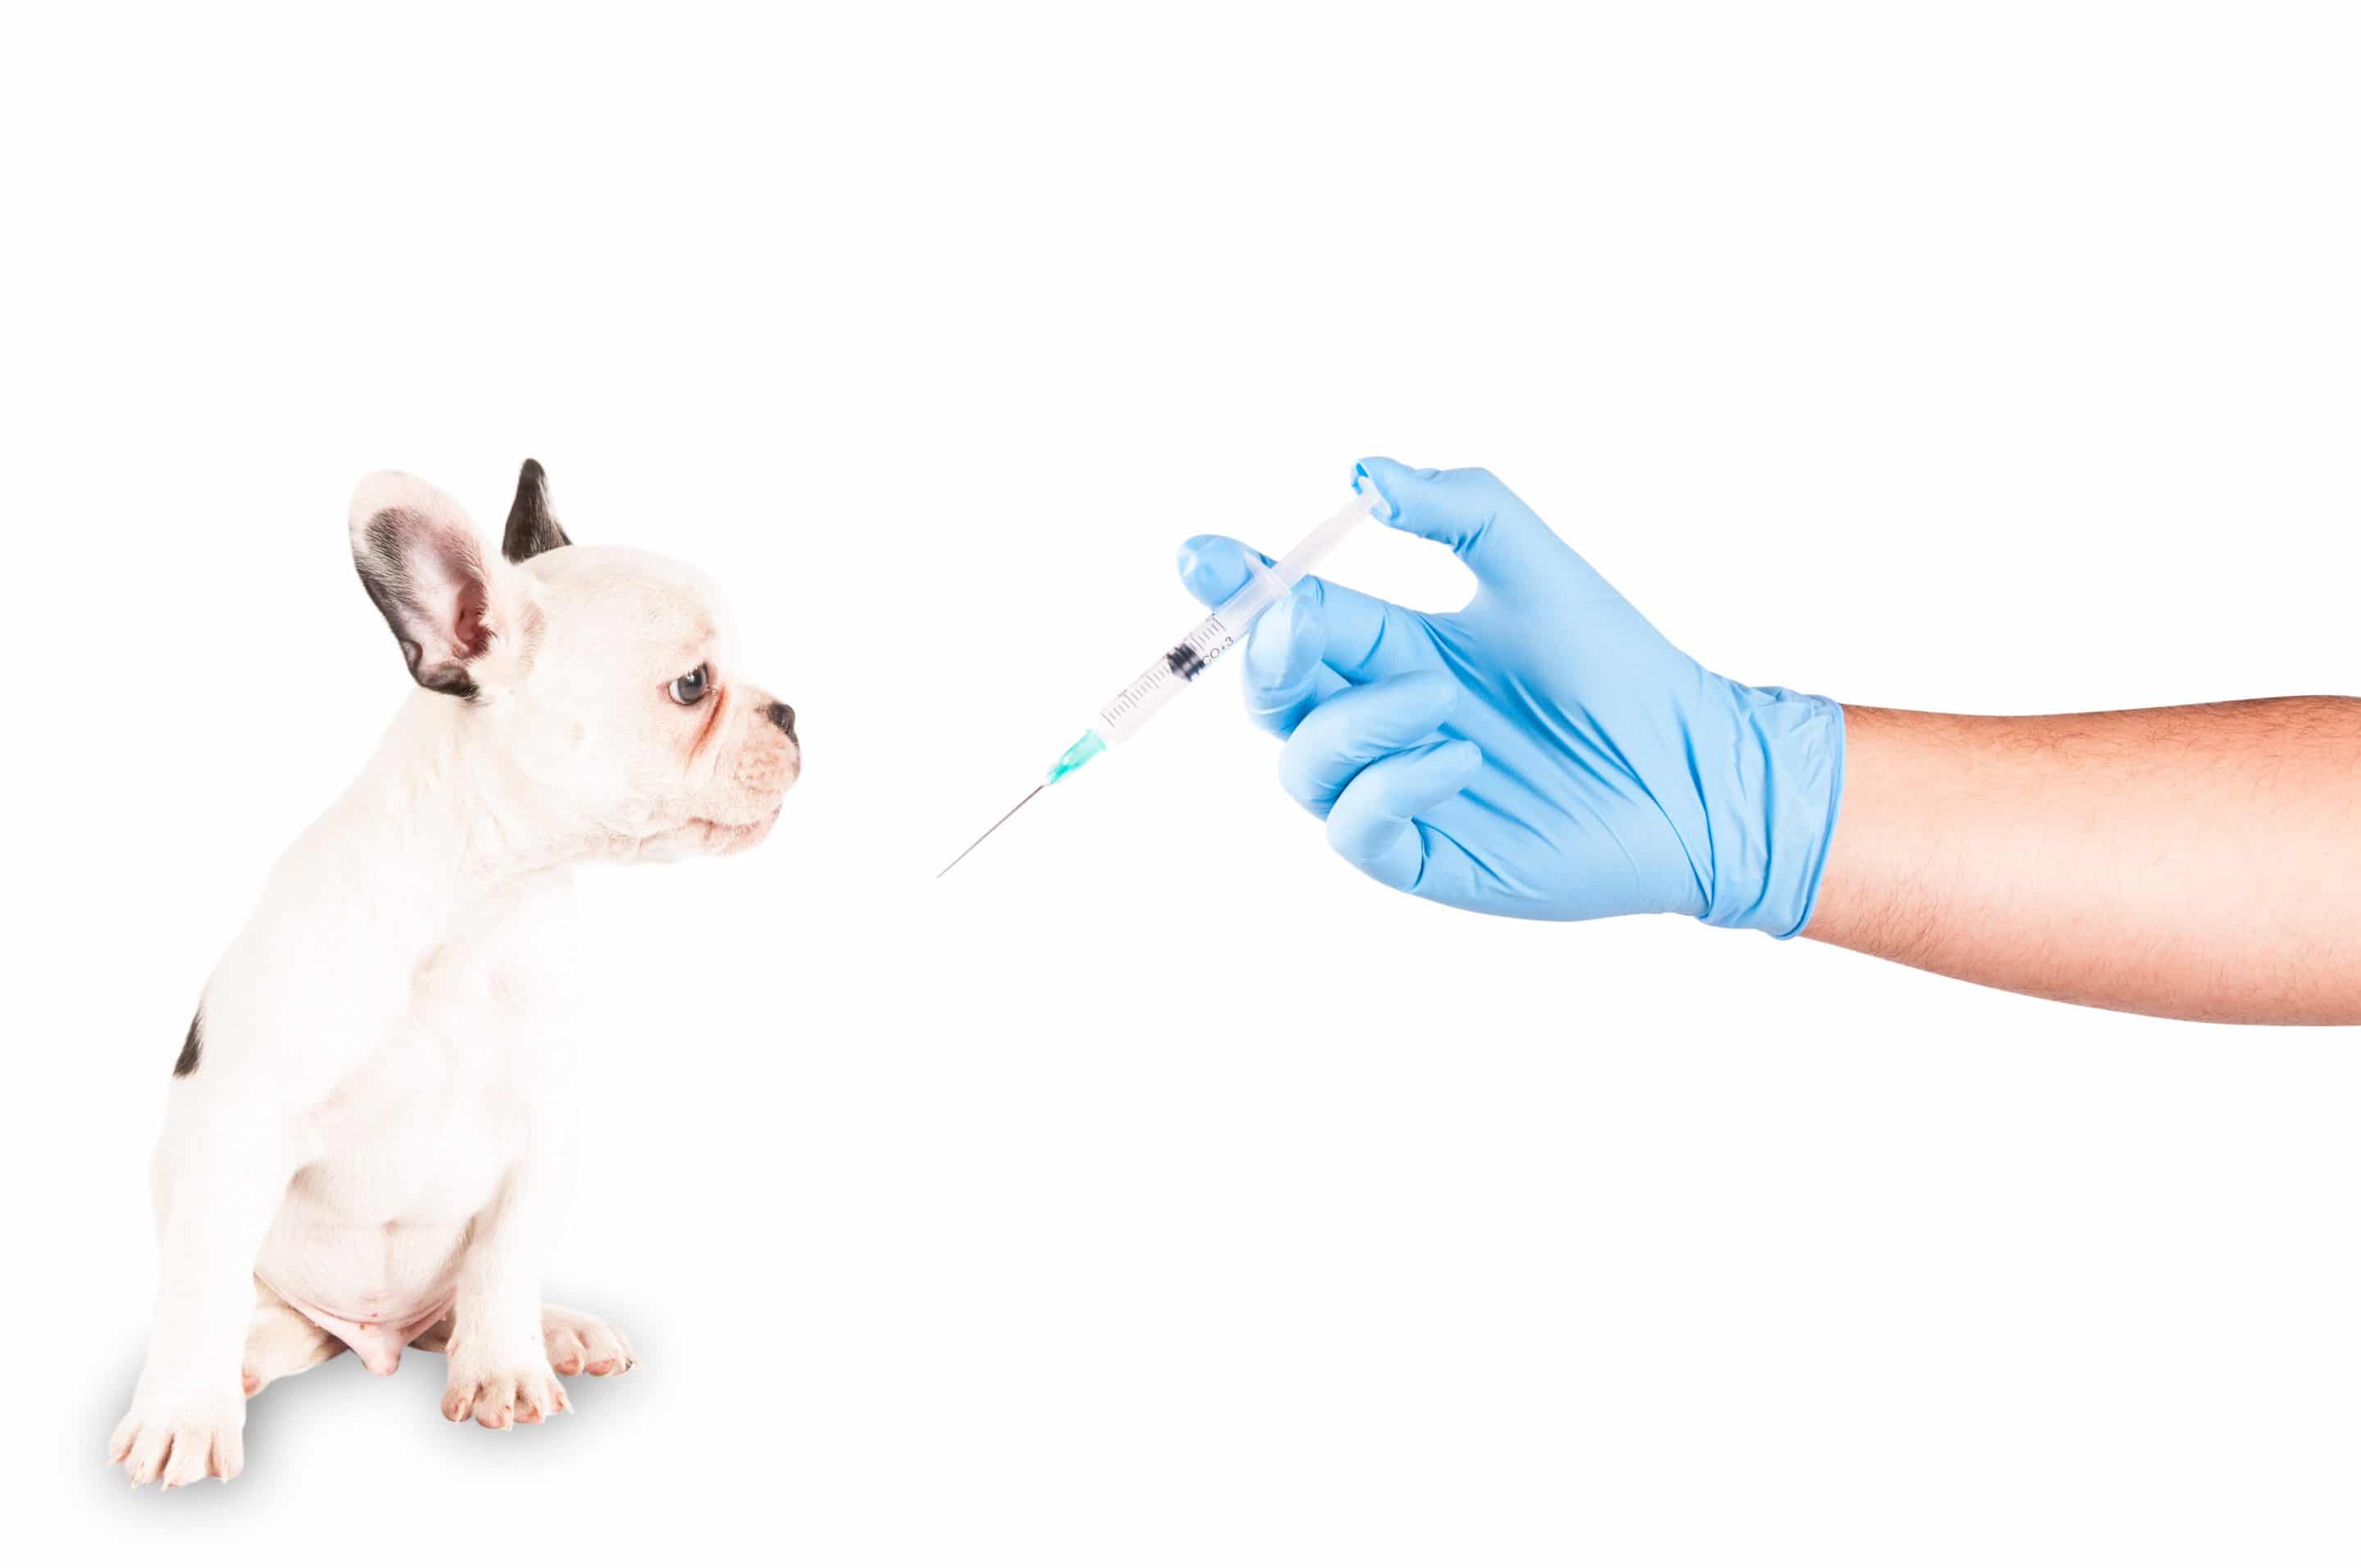 Прививка от бешенства кошке. Вакцинация собак и кошек. Прививка животным. Вакцинация животных на белом фоне. Животное на прививке.